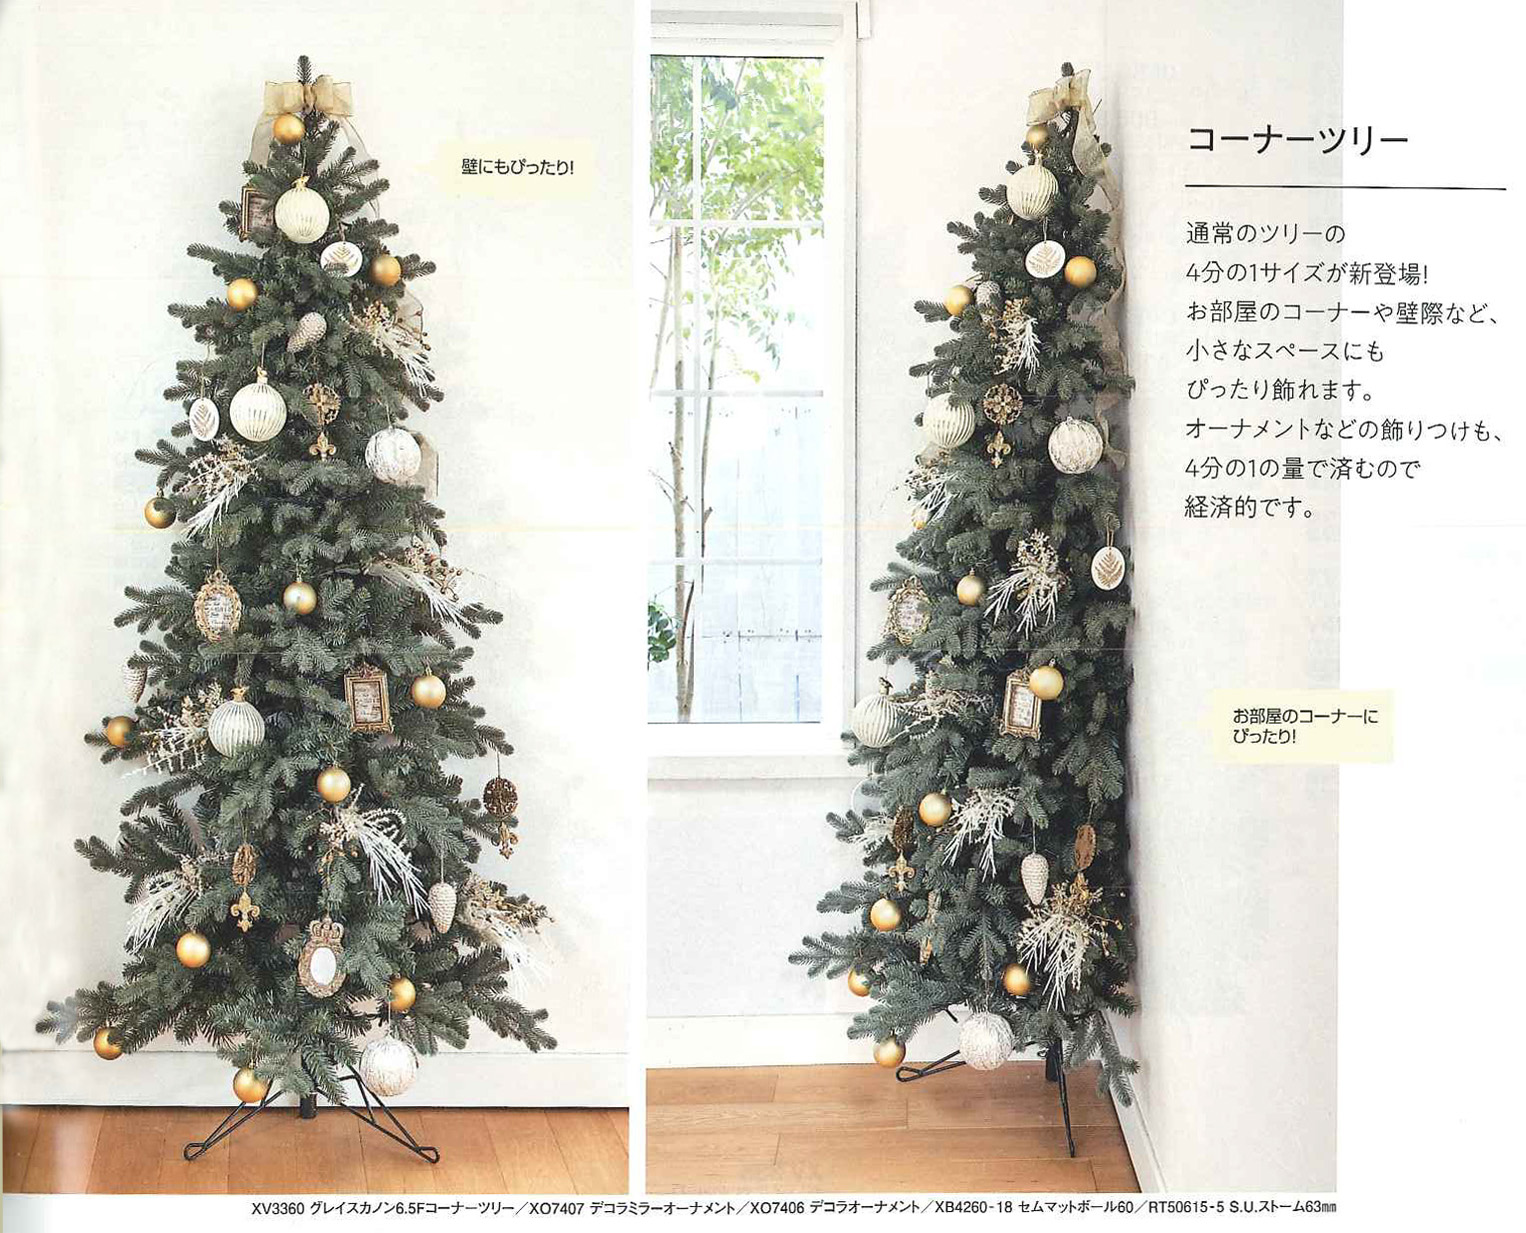 スリムコーナーツリー クリスマス アートフラワー 装飾関係 取扱商品 レンタル 貸し出しなら四国大洋工芸グループへ